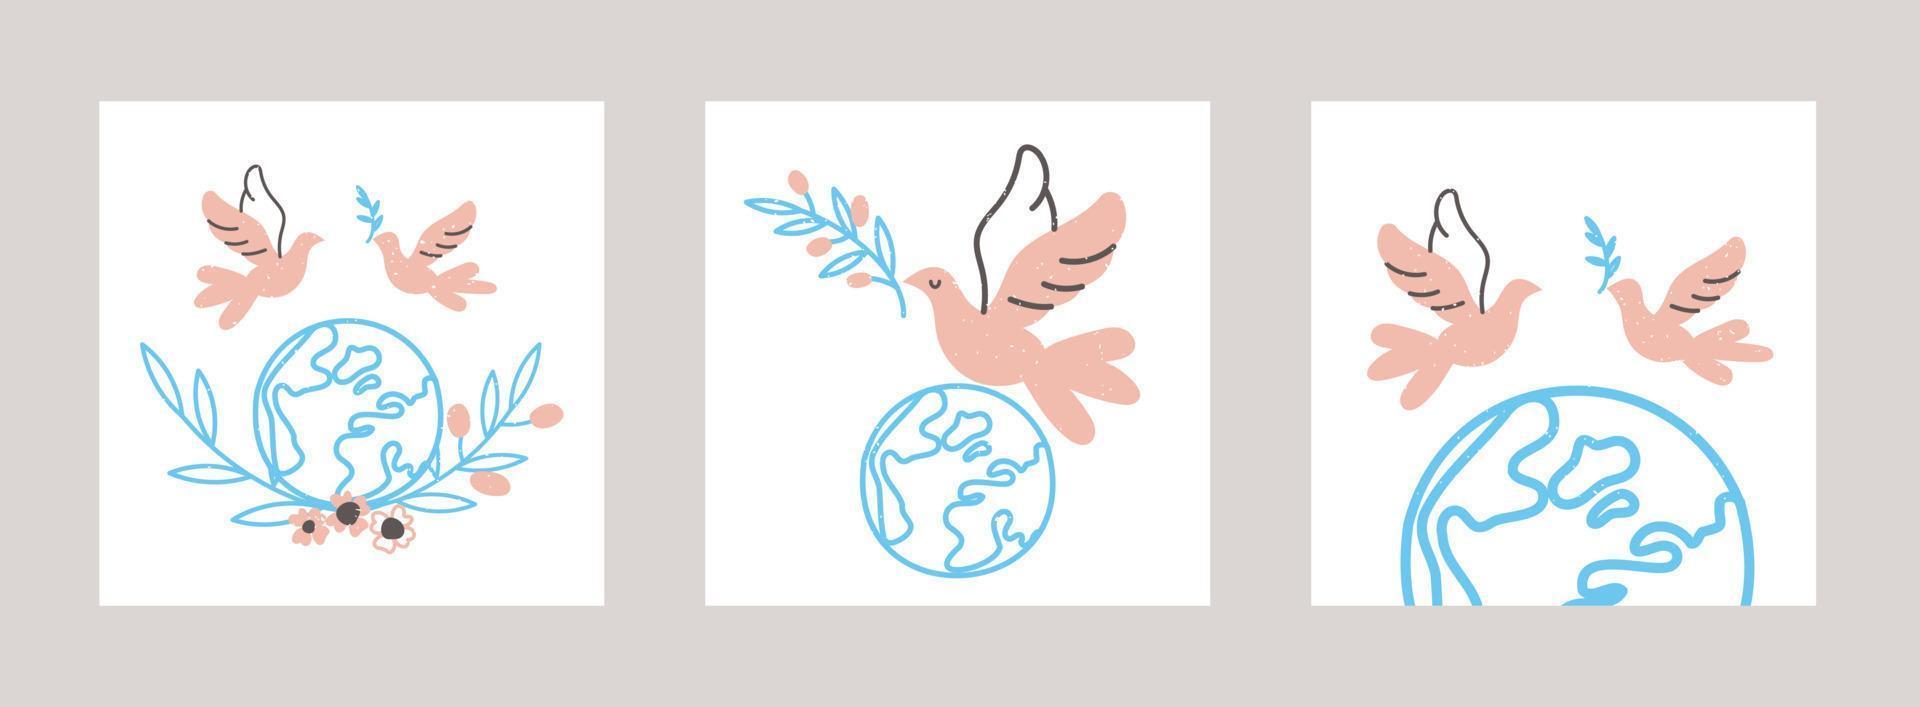 vliegende duif en planeet aarde set kaarten. minimalistische illustratie voor internationale dag van vrede. vector